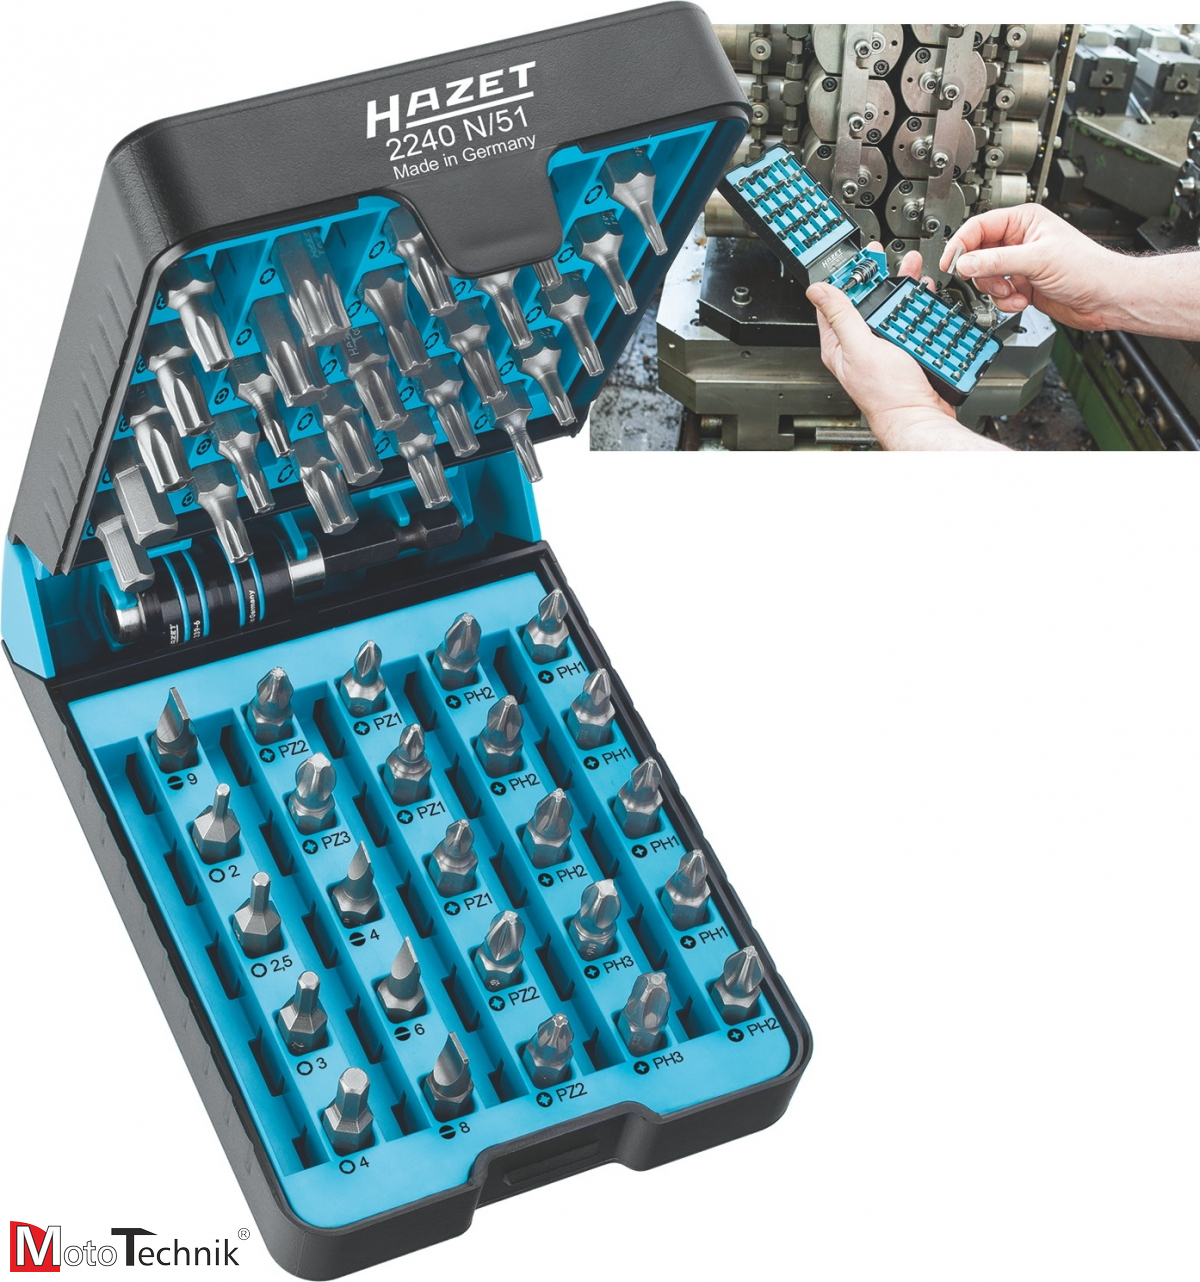 Wózek narzędziowy z 265 profesjonalnymi narzędziami HAZET 179 NXL-7/265 (265 narzędzi)